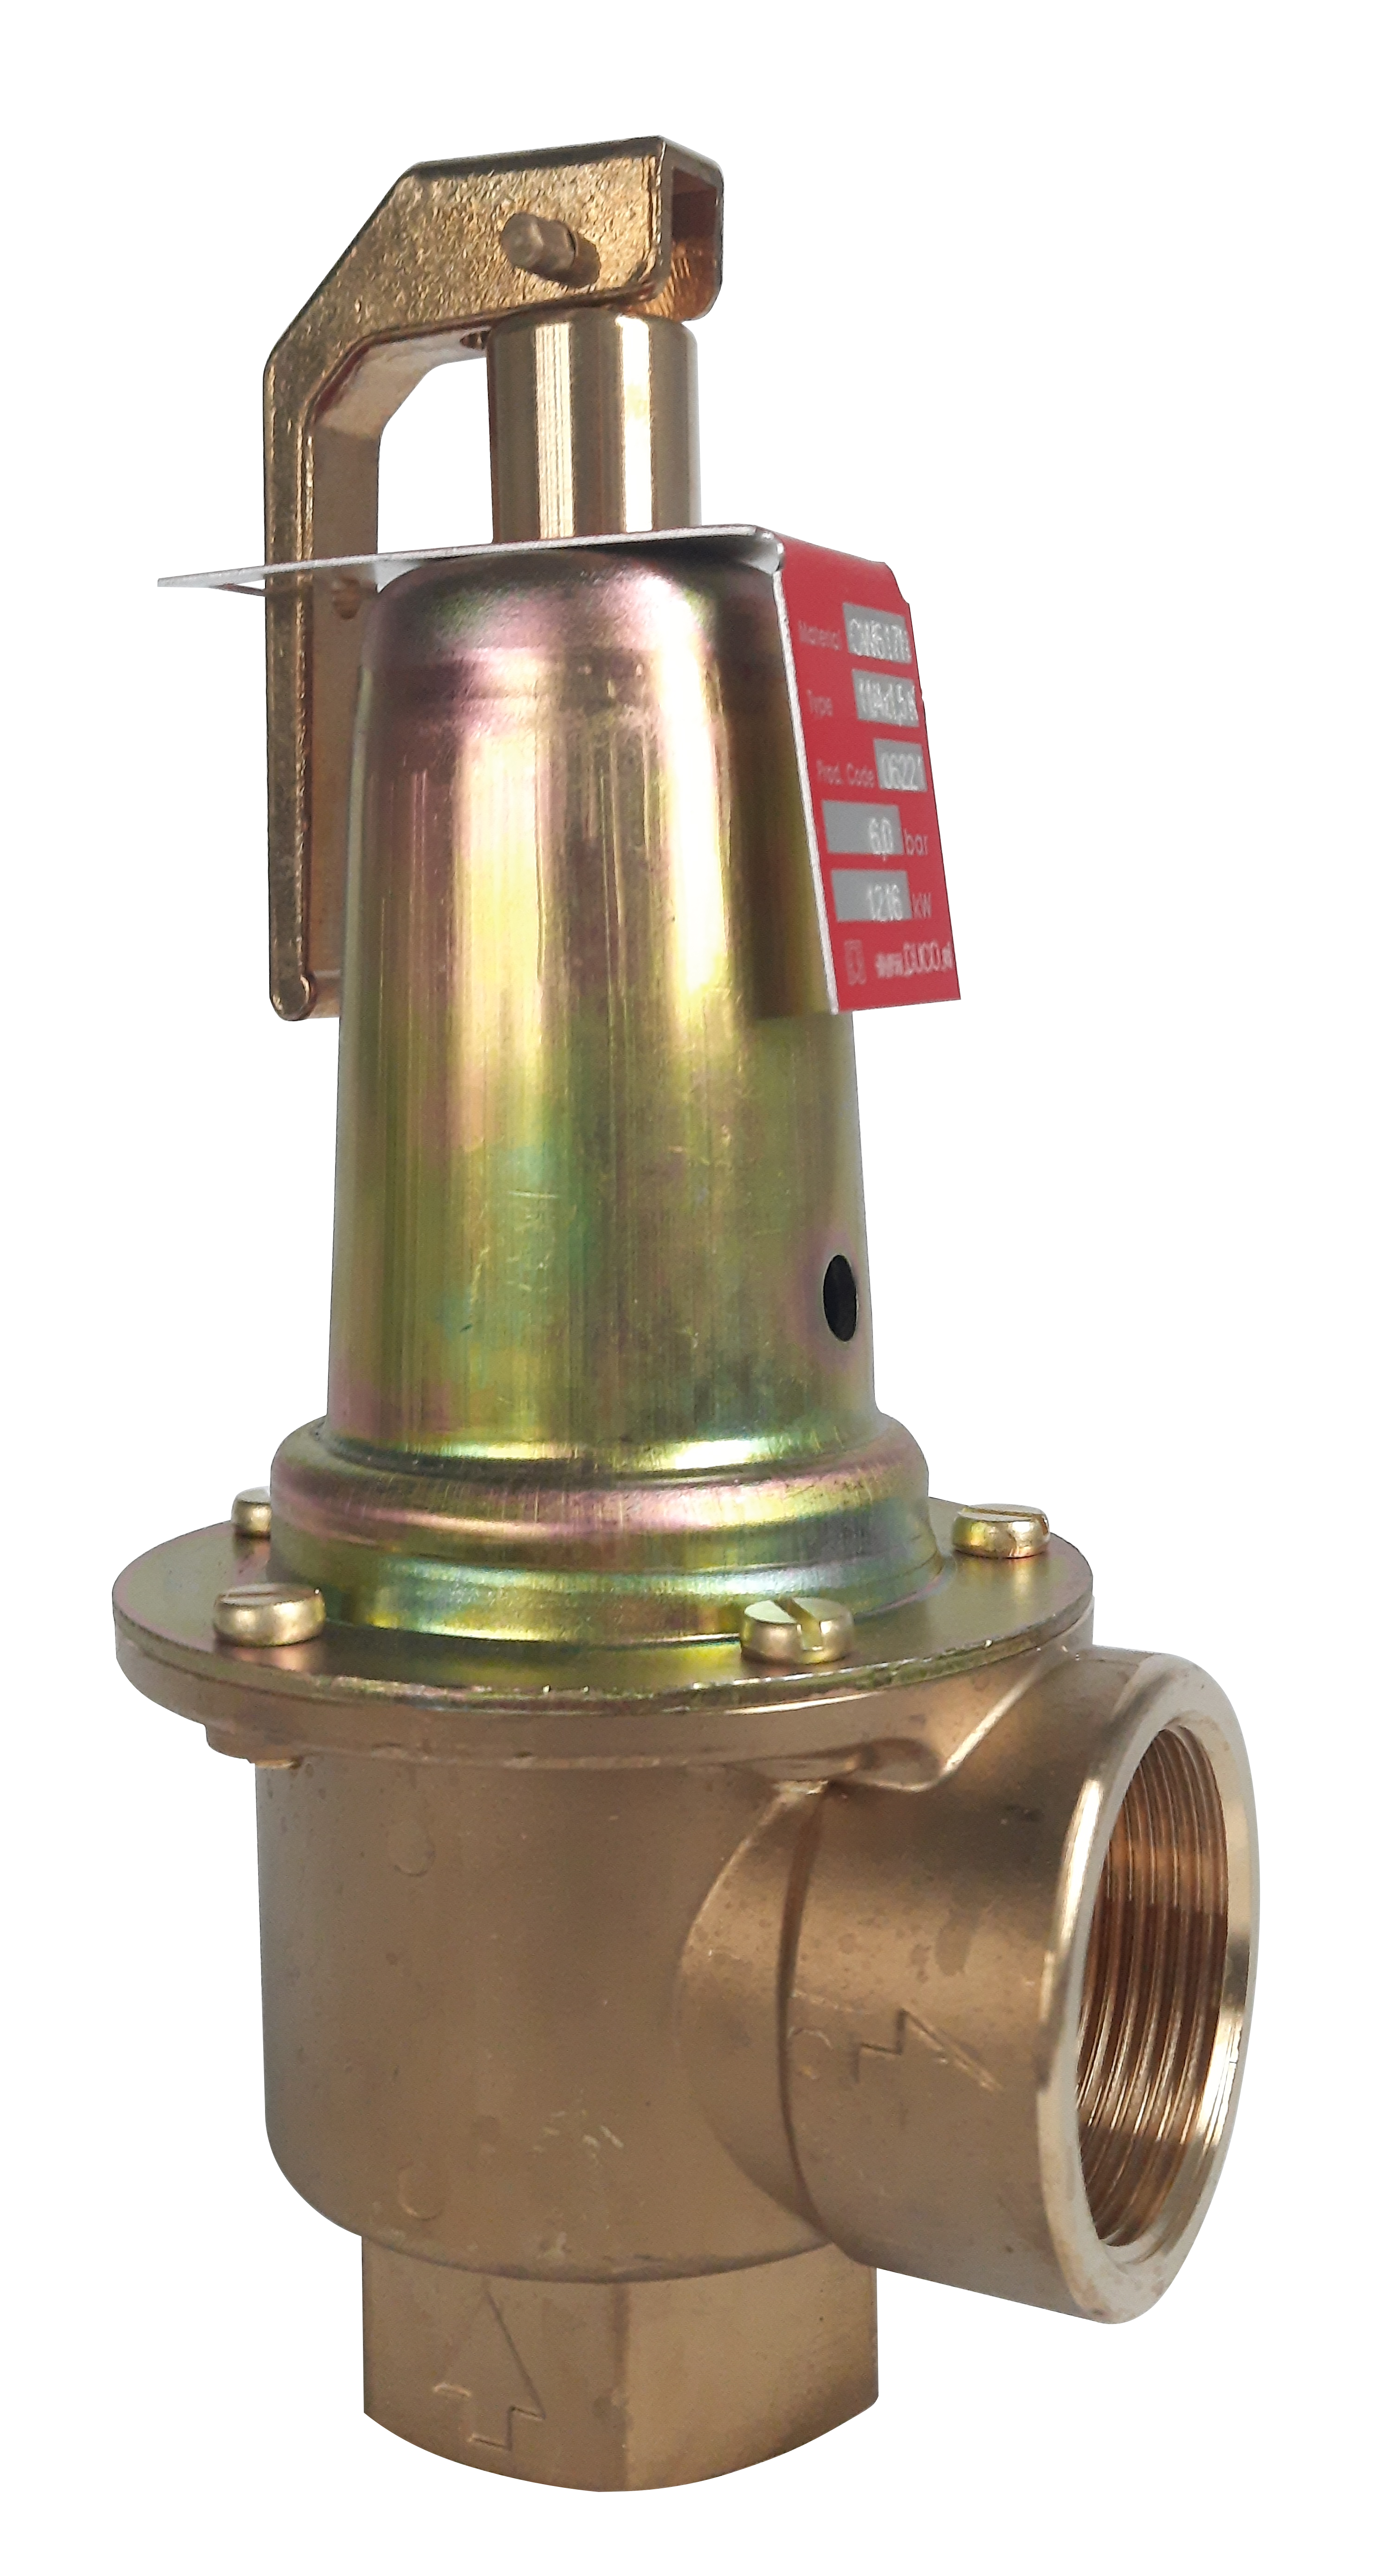 Topenářský pojistný ventil DUCO 2"x2 1/2" 1,5 bar (695065.15)